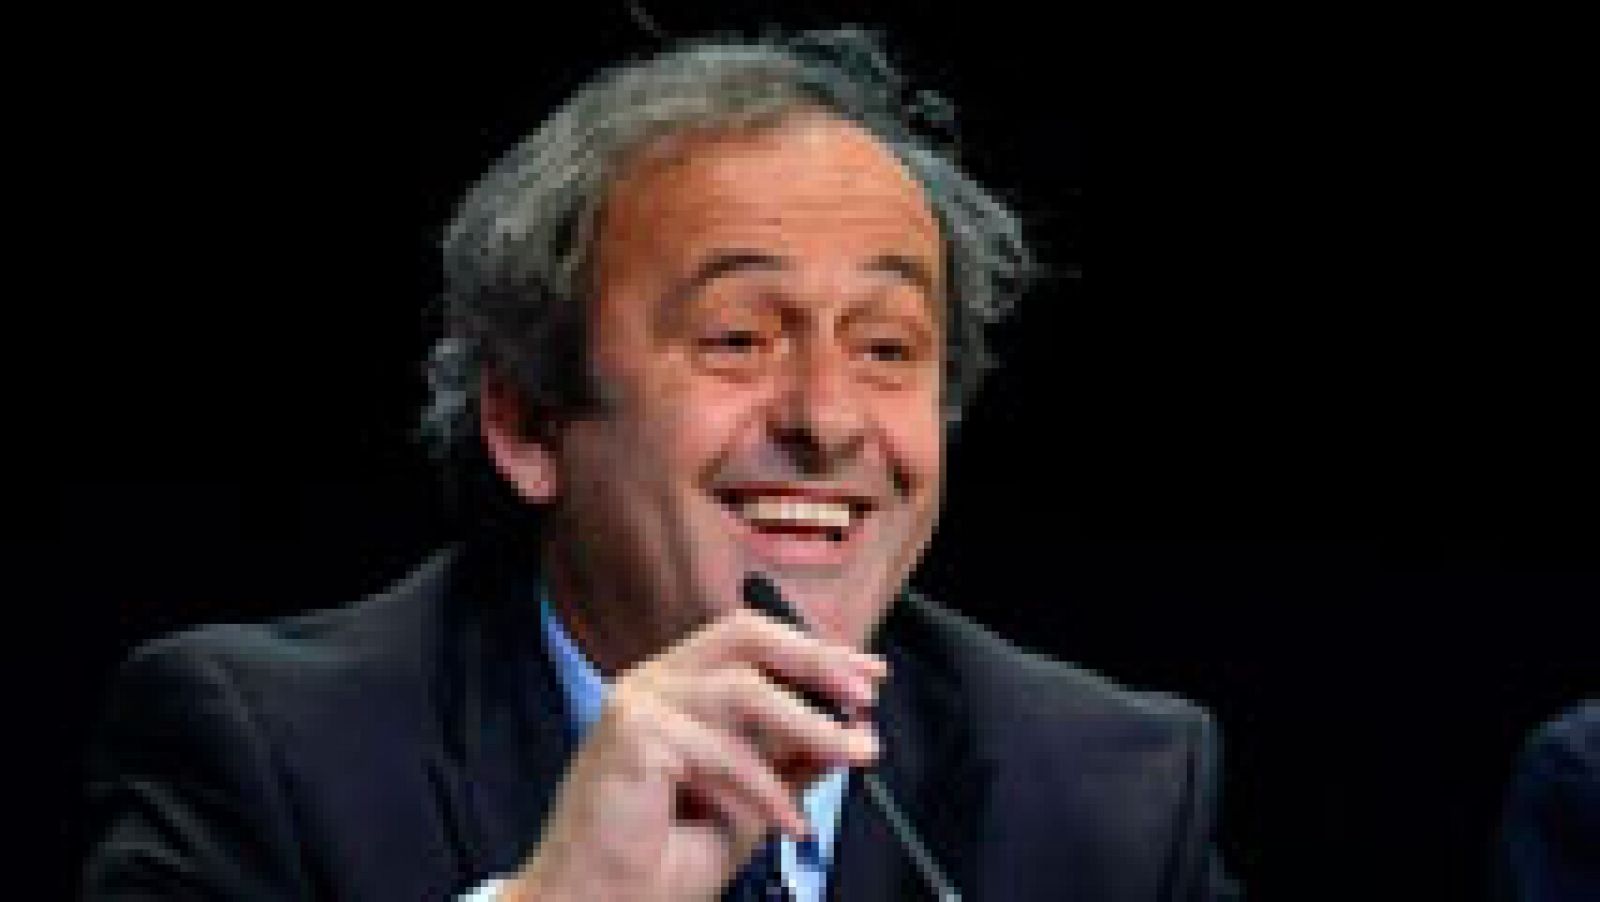 Michel Platini, exjugador francés de fútbol y actual presidente de la UEFA, ha anunciado que presenta su candidatura a presidir la FIFA, máximo organismo del fútbol mundial. Los comicios de tendrán lugar el 26 de febrero del próximo año.